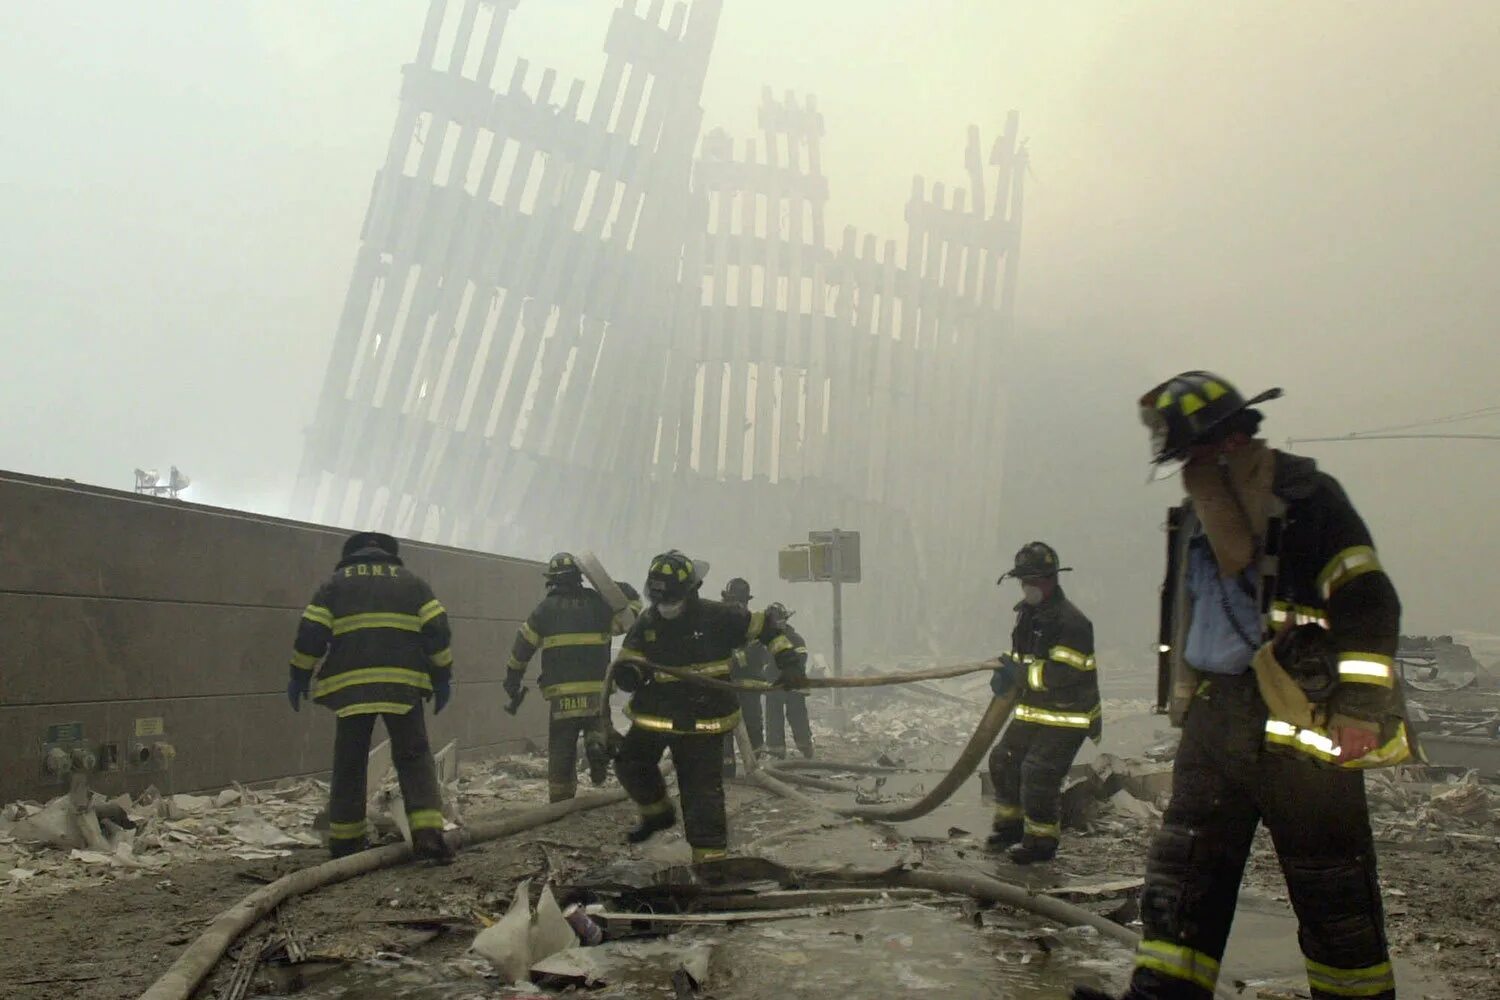 Теракт в 2001 году 11 сентября. Башни-Близнецы 11 сентября 2001. Пожарные Нью-Йорка 11 сентября. Всемирный торговый центр в Нью-Йорке 11 сентября 2001 года. Башни Близнецы в Нью-Йорке 11 сентября.